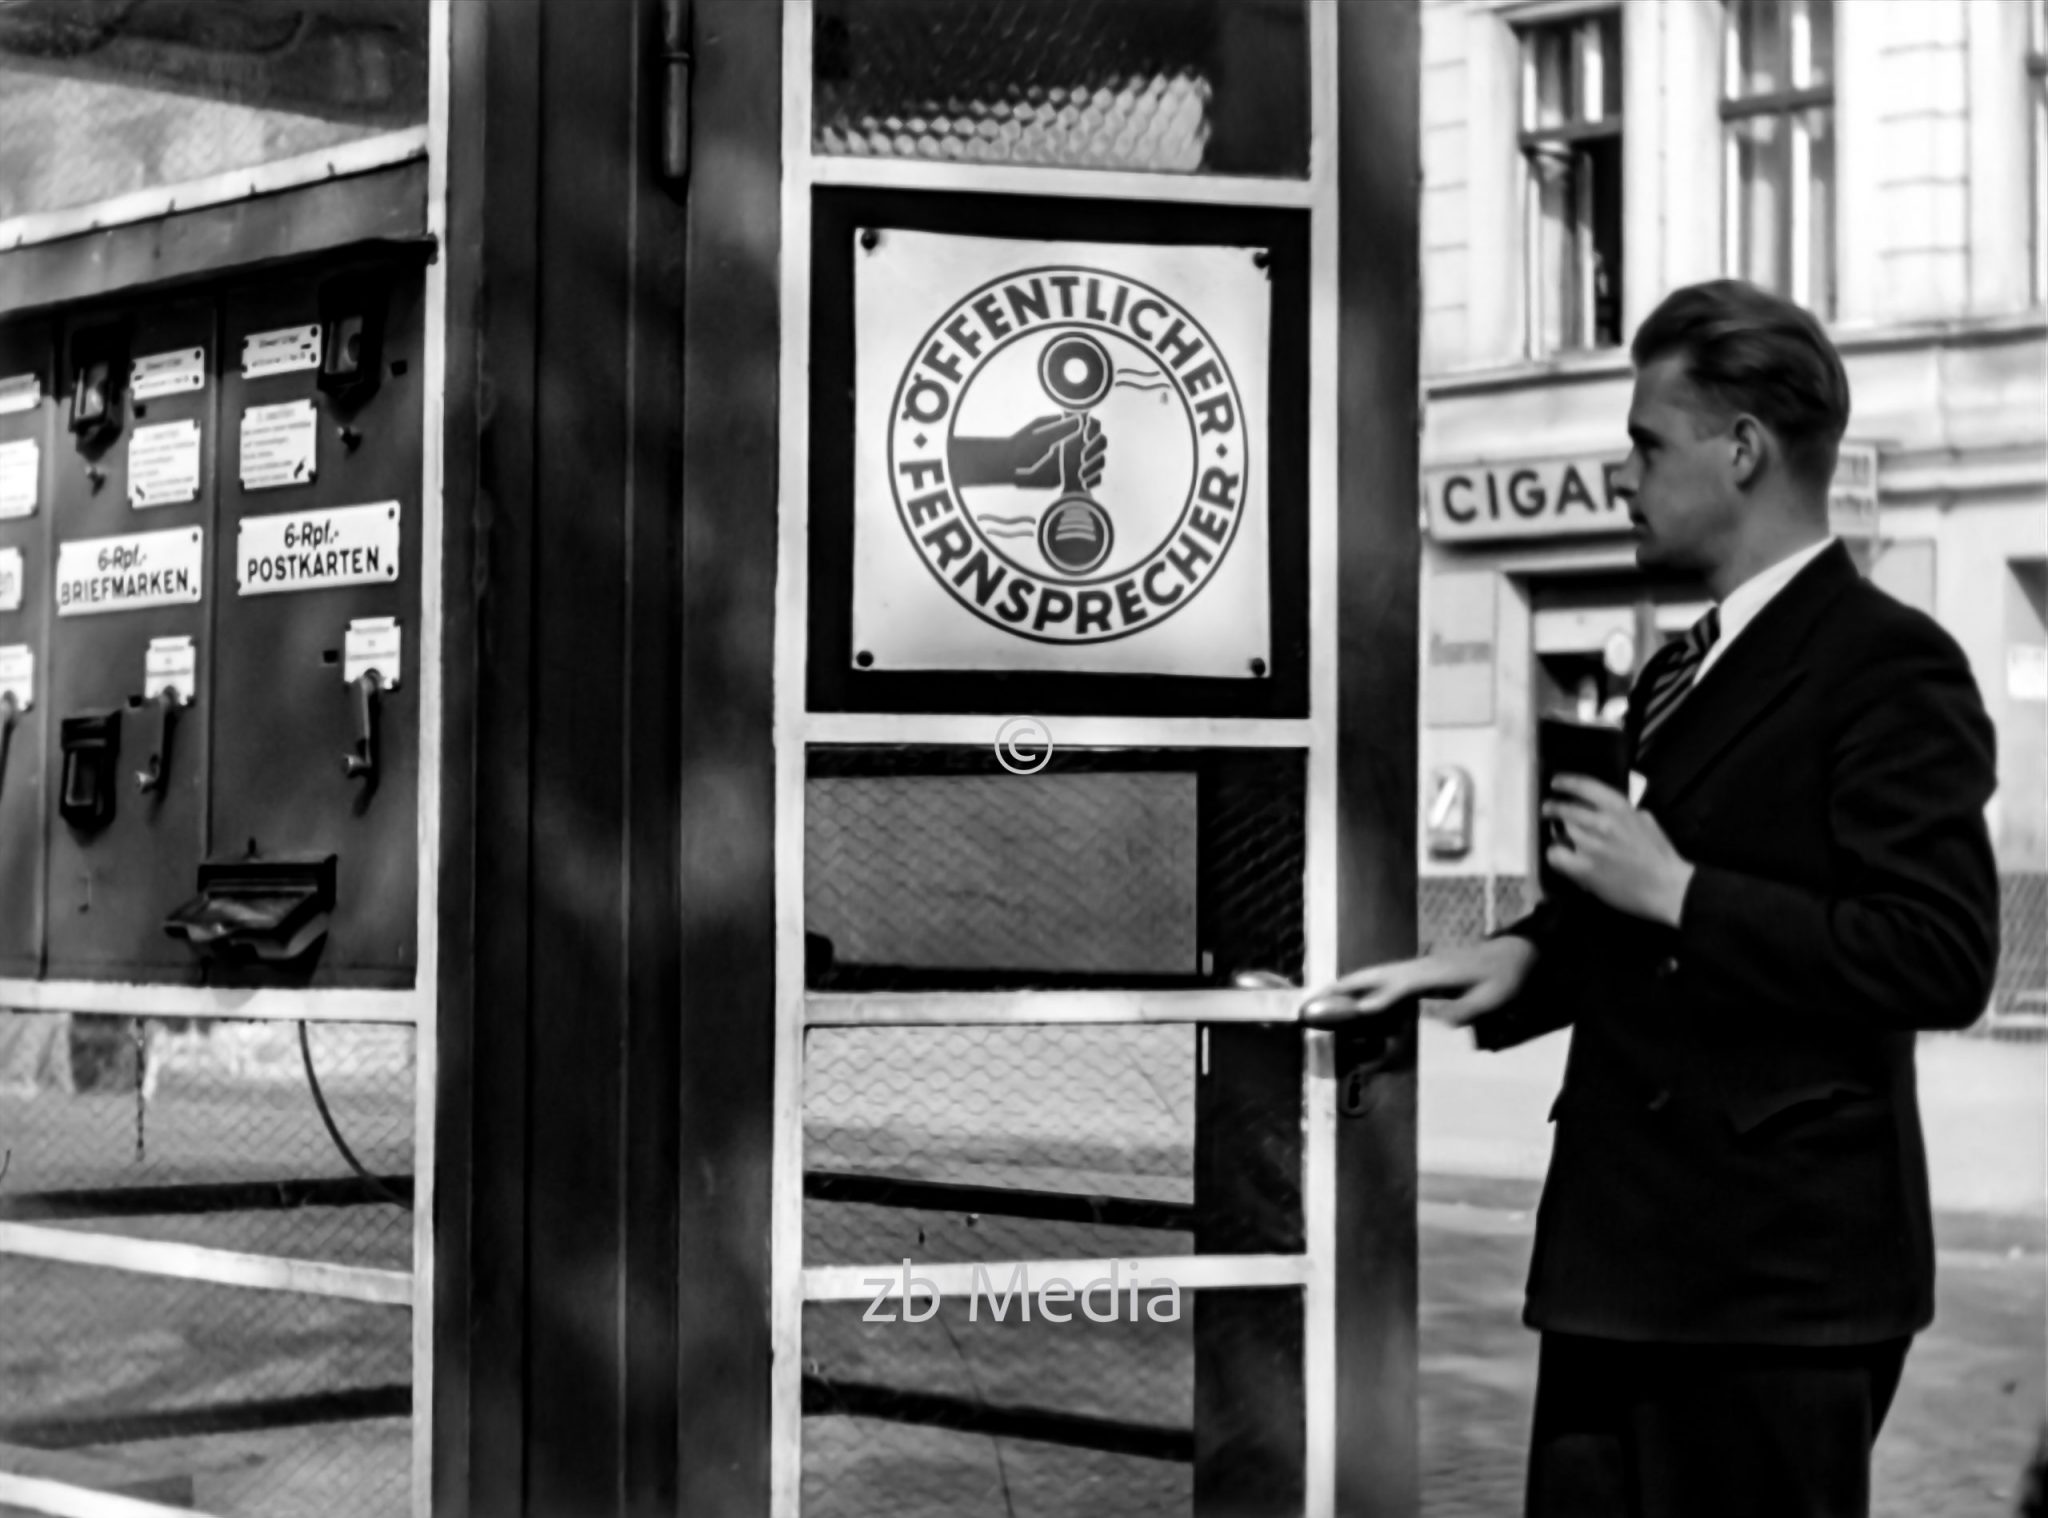 Telefonzelle in Berlin 1937